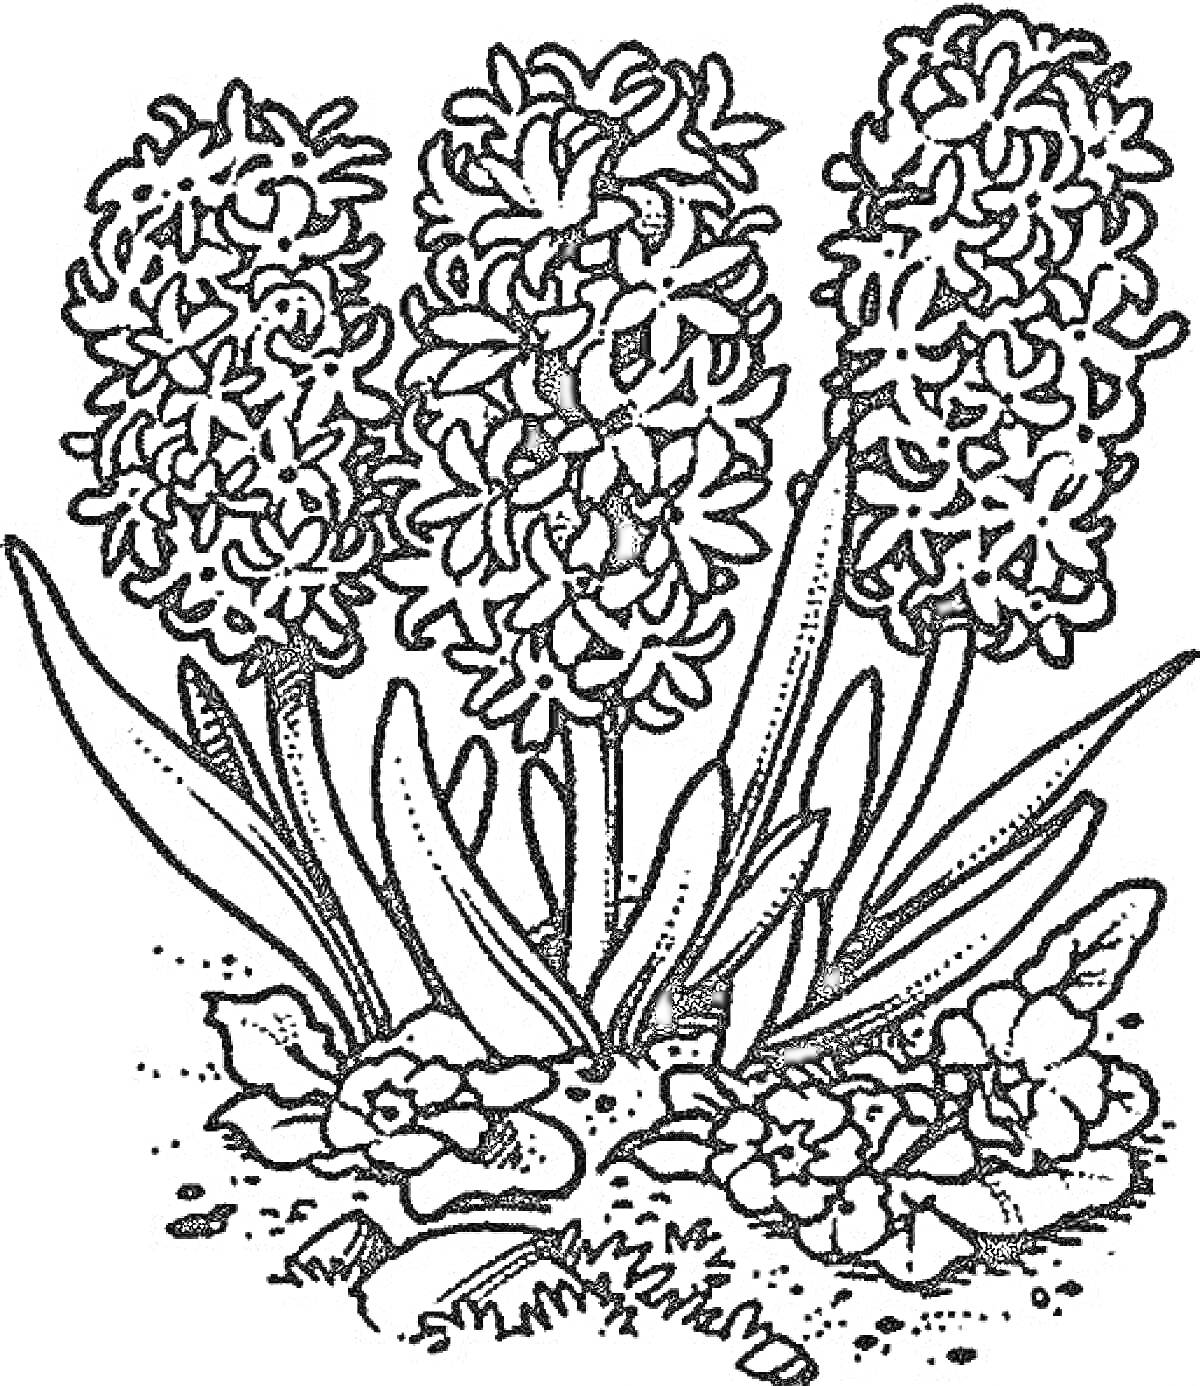 Три гиацинта с листьями и цветами у основания, растущие из земли